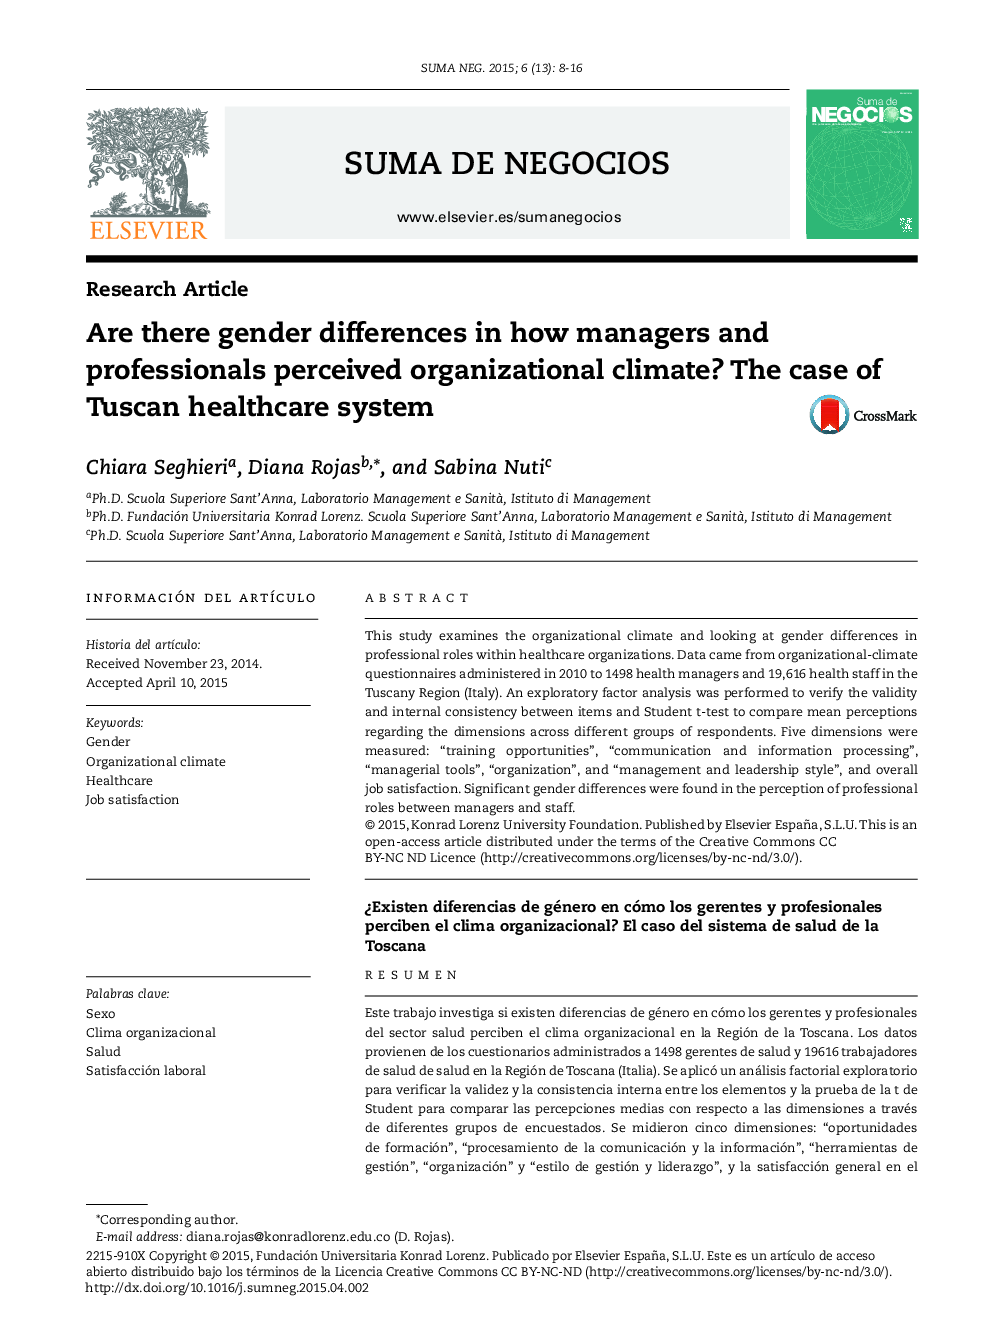 آیا تفاوت های جنسیتی در نحوه درک جو سازمانی مدیران و متخصصان وجود دارد؟ مورد سیستم بهداشت و درمان توسکانی